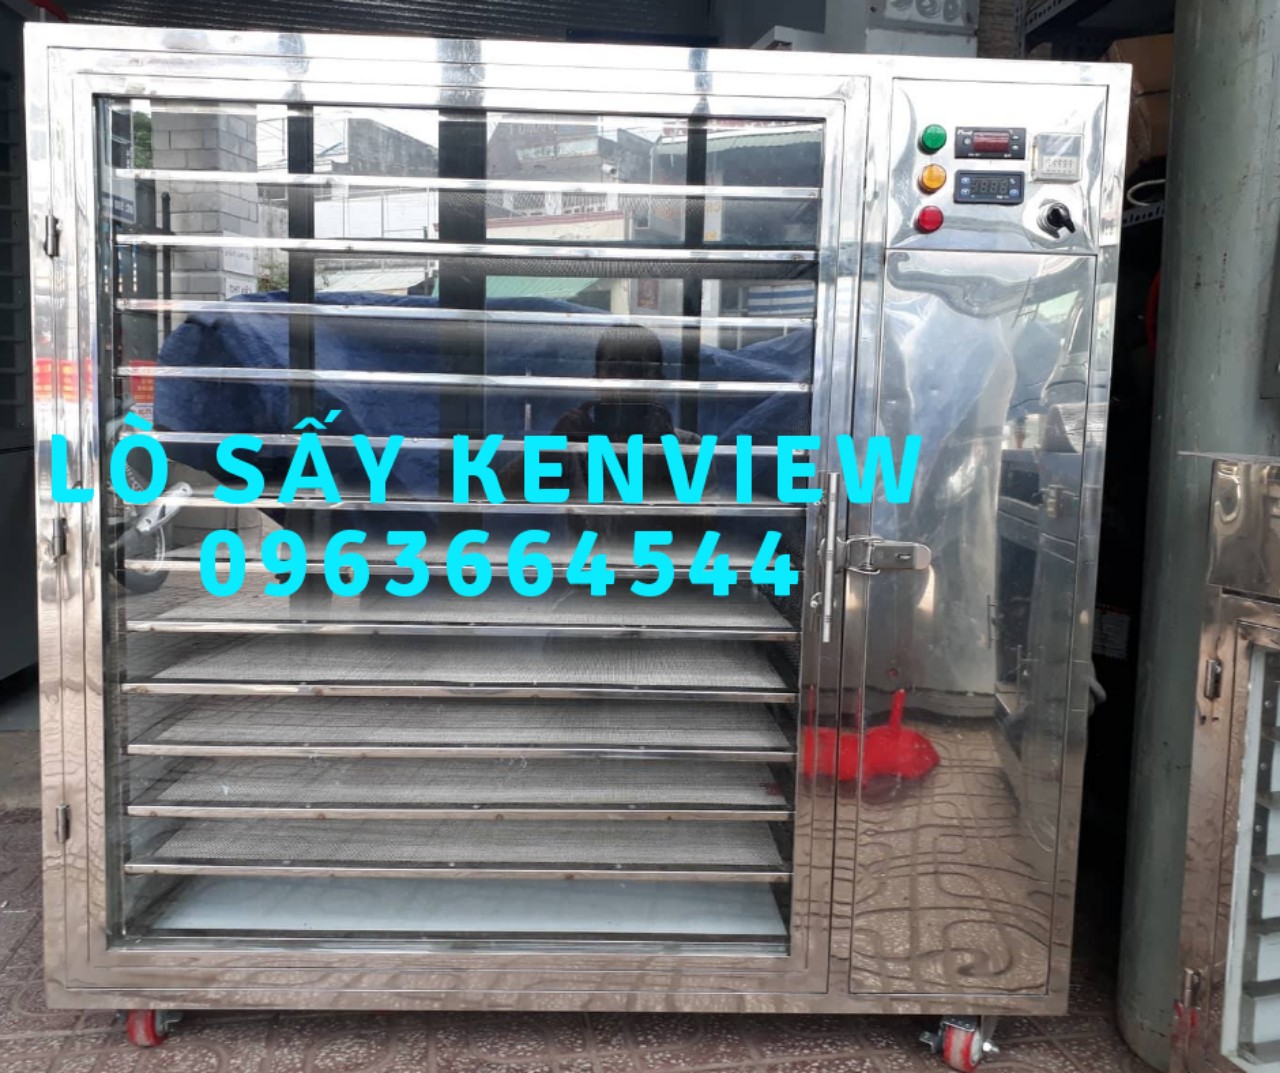 Cung cấp máy sấy thực phẩm ở Hà Nội - Máy sấy thực phẩm công nghiệp